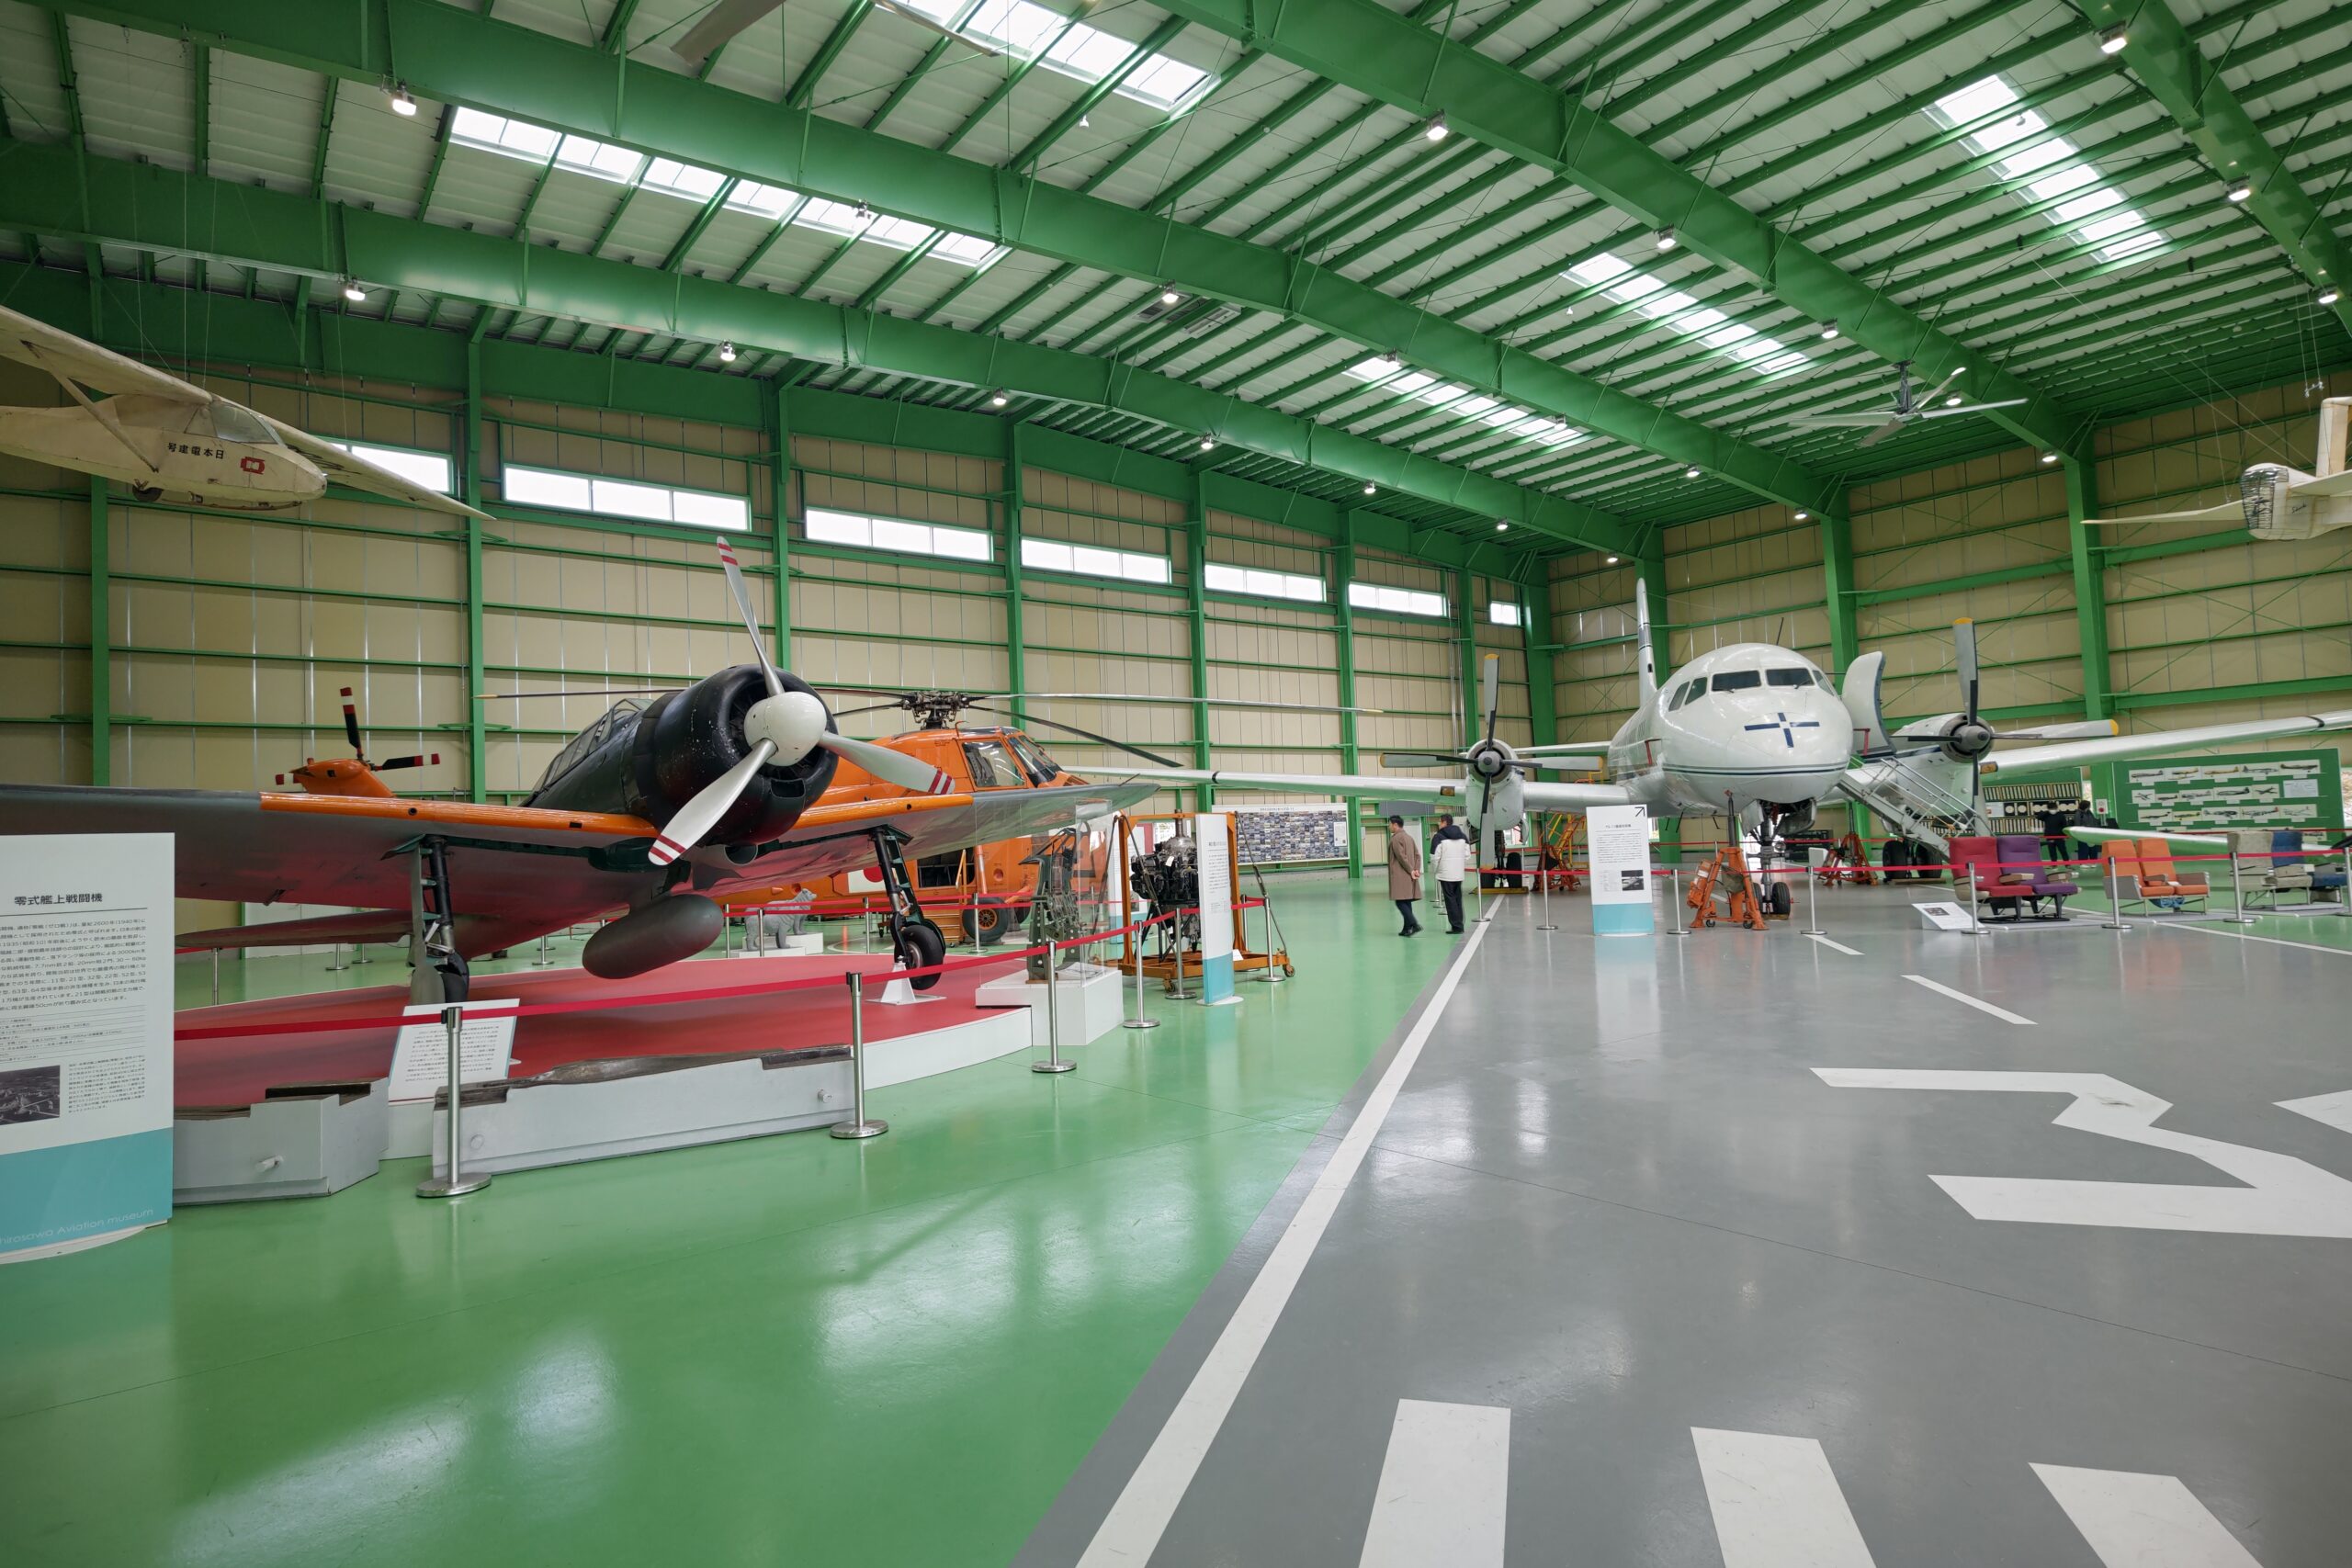 広大な空間に歴史的な機体が並ぶユメノバの「科博廣澤航空博物館」